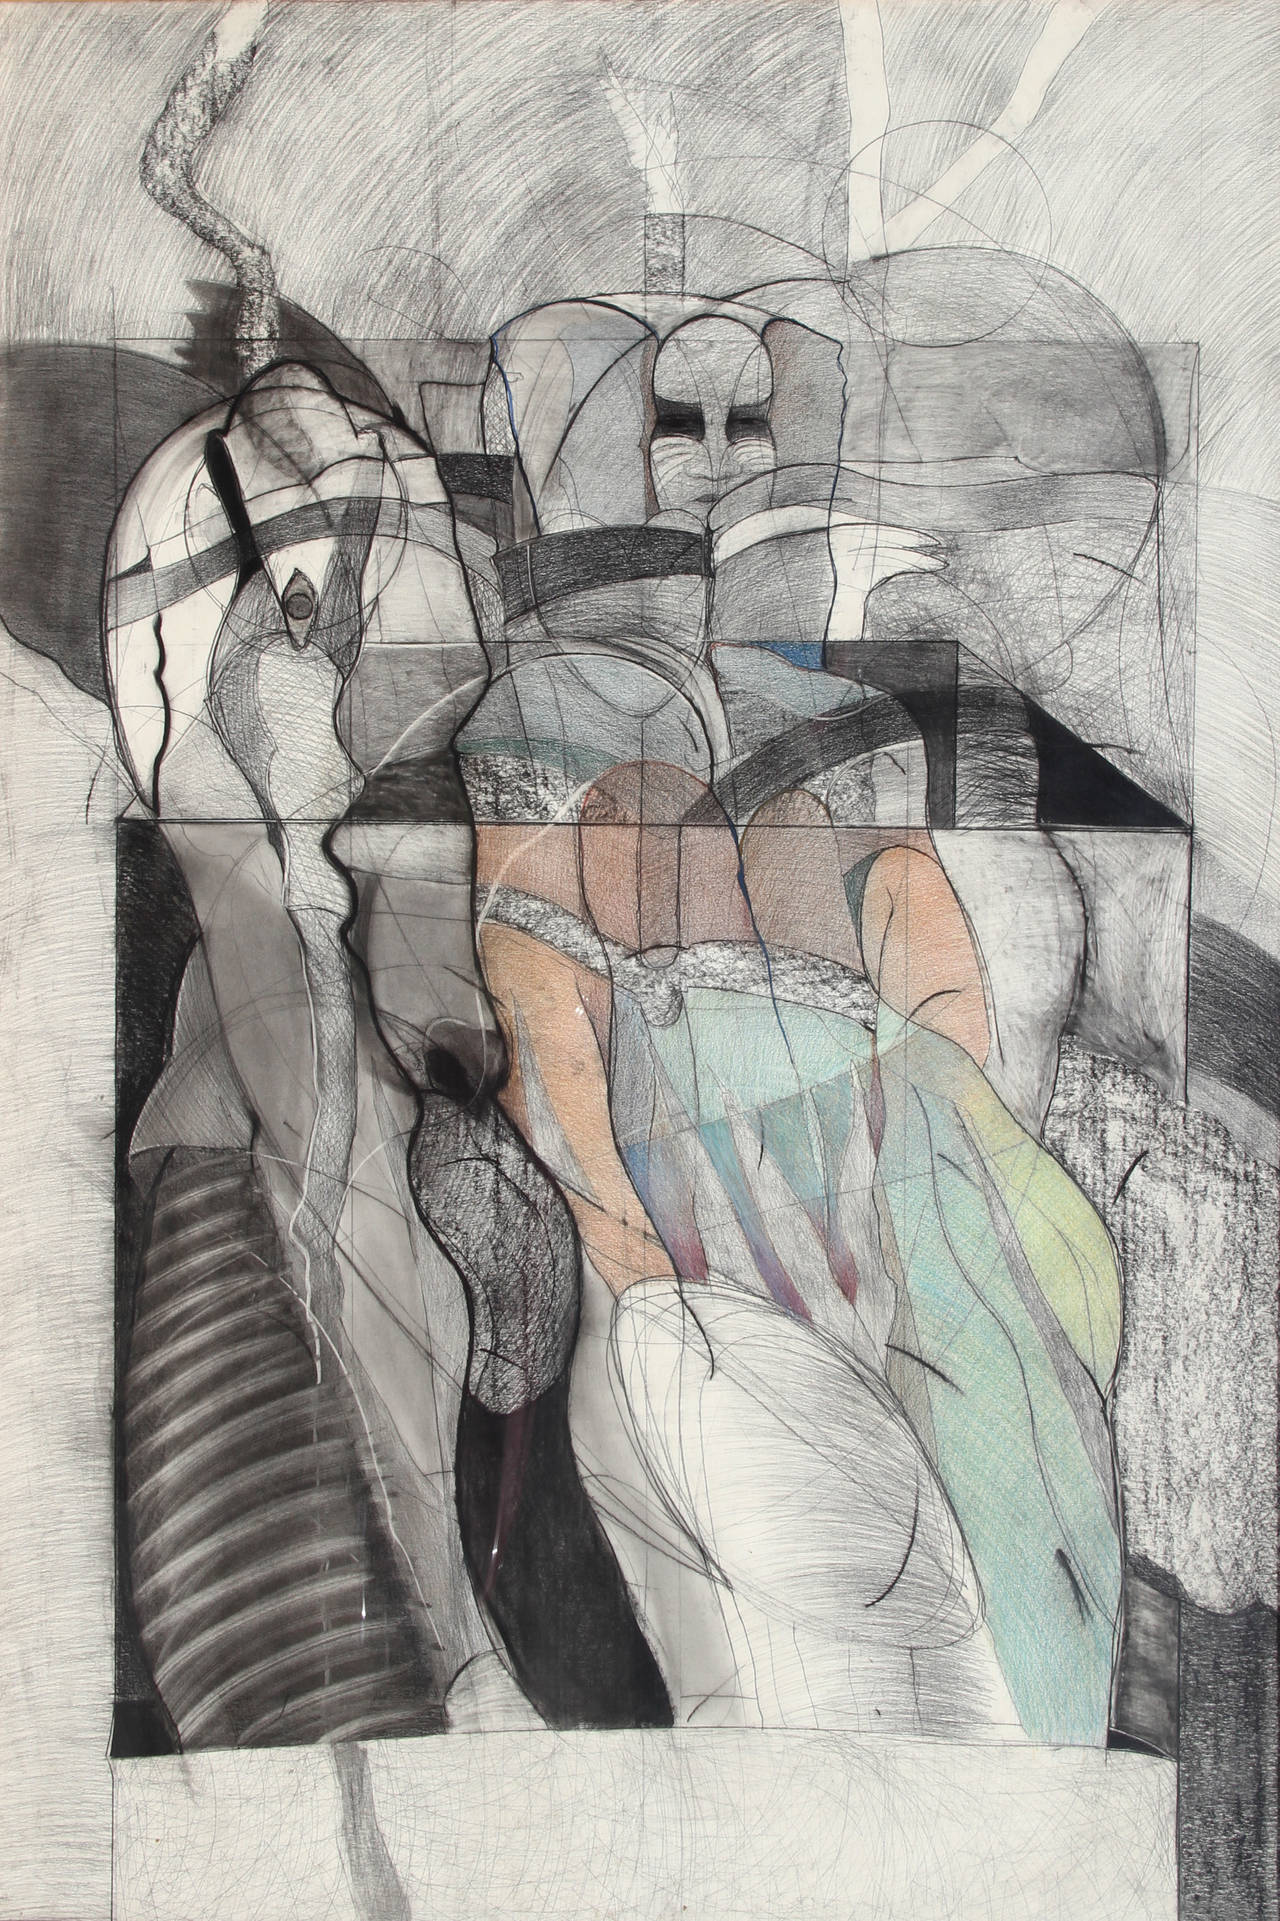 Eine Mischtechnik-Zeichnung von Michael Platt aus dem Jahr 1981. Ein gegenständliches Bild einer Figur in einer kühlen, gedämpften Farbpalette. Platt schafft Kunstwerke, die sich auf figurative Erkundungen der Überlebenden des Lebens und der